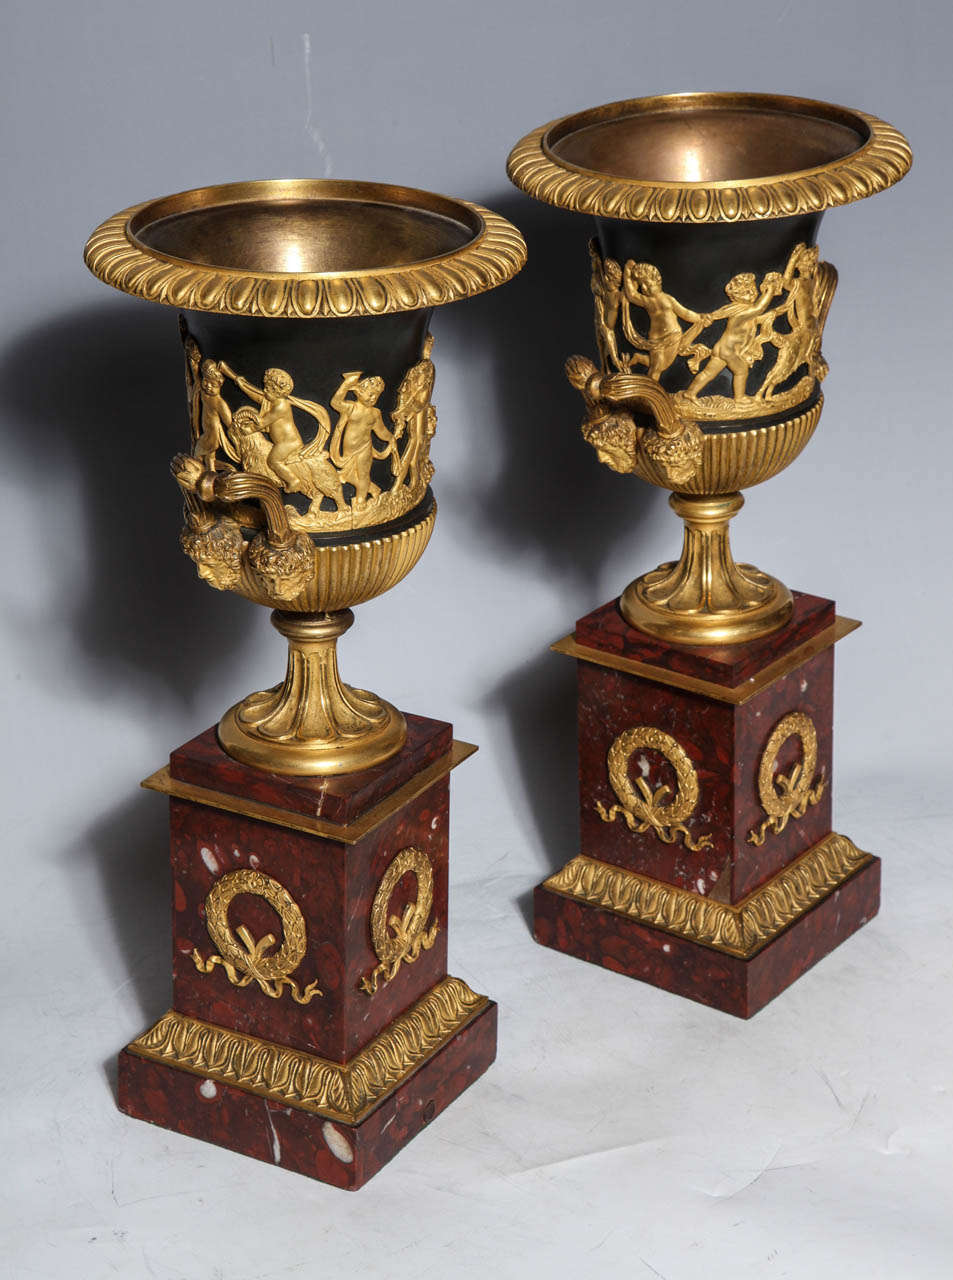 Ein Paar neoklassische Vasen aus französischer Empirezeit in Form von Doré-Bronze, patinierter Bronze und Rouge Campana aus Marmor, um 1820, mit vergoldeten Bronzedekorationen von fein skulptierten, verspielten Putten. Außerdem halten die Masken die